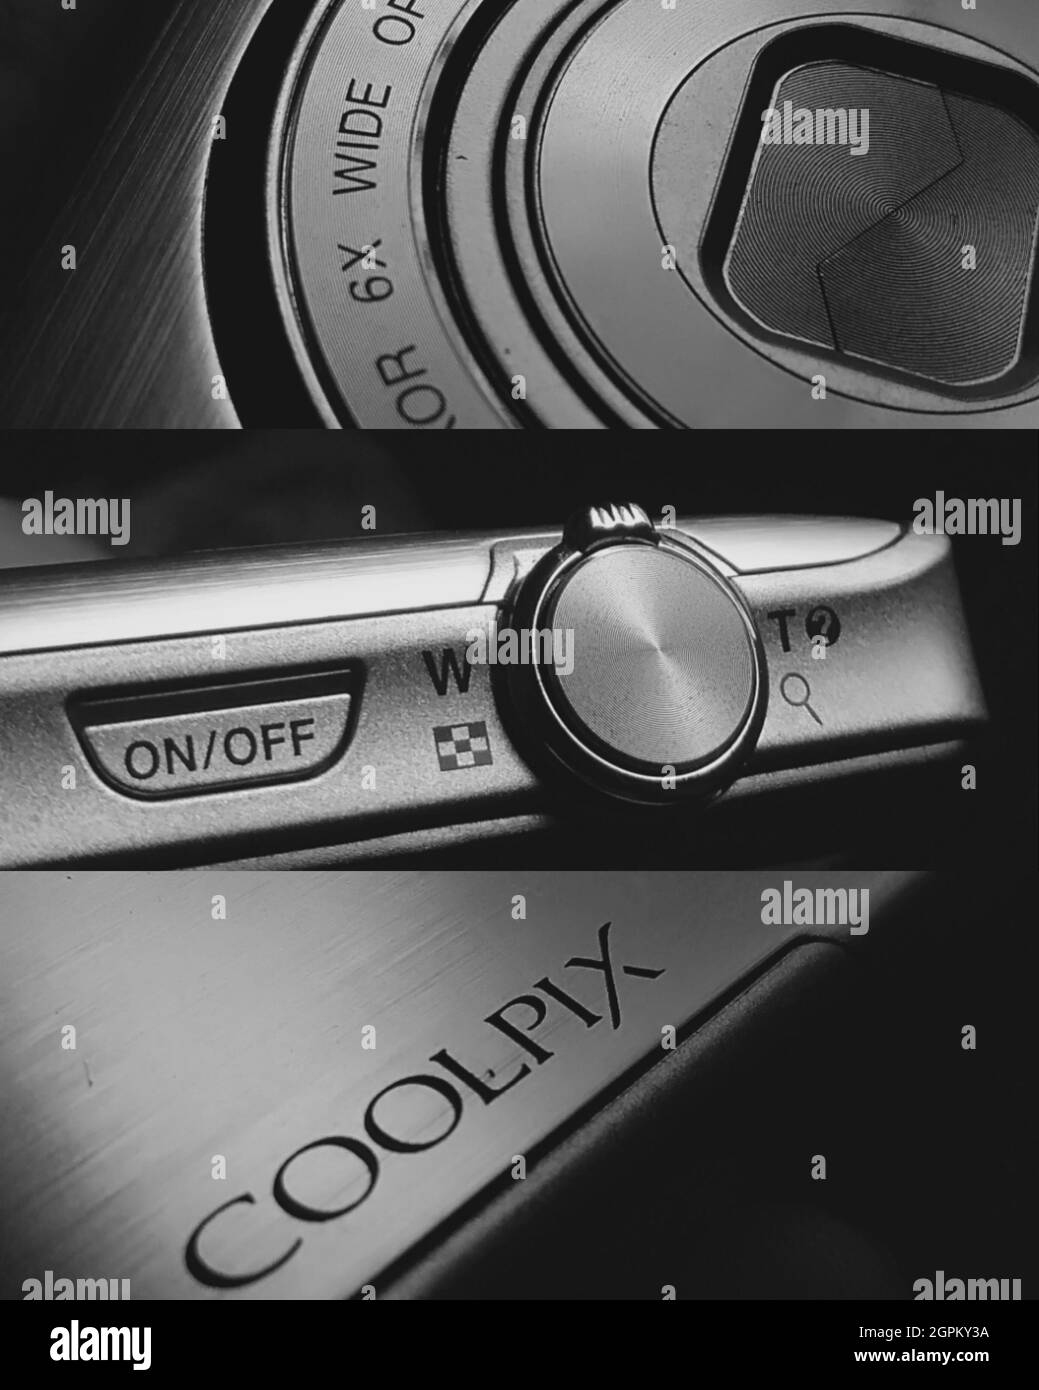 Nikon CoolpixS5200 Stock Photo